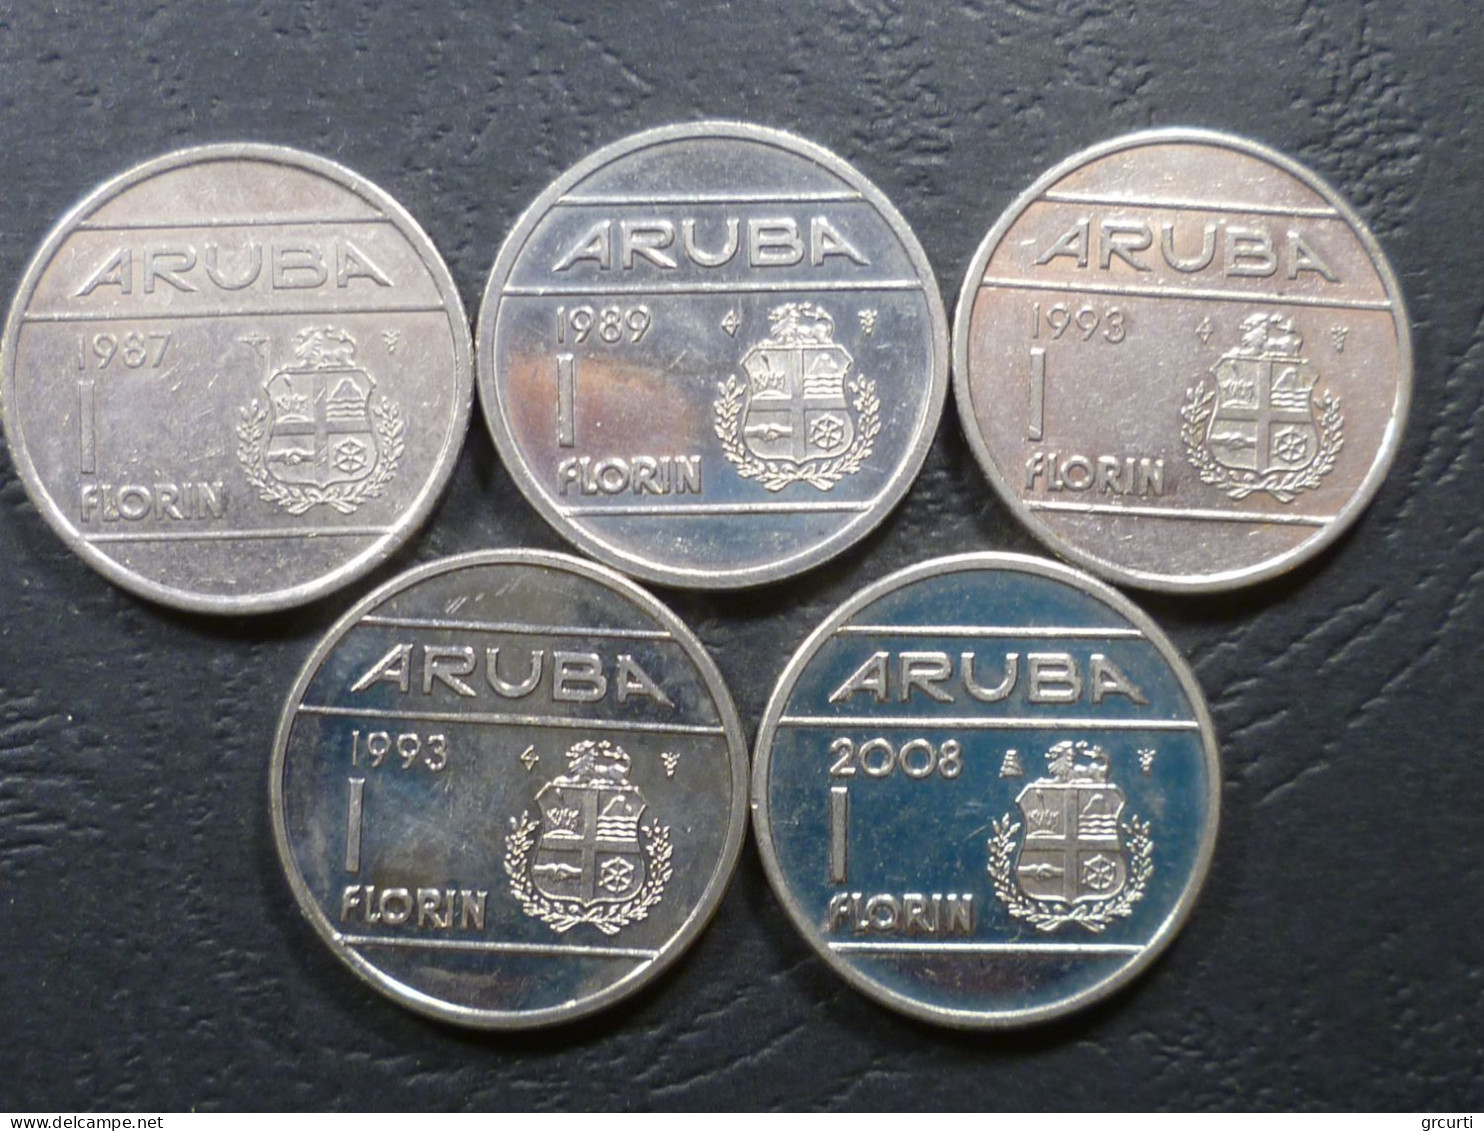 Aruba - Lotto di 20 monete in metalli comuni emesse fra il 1986 ed il 2008